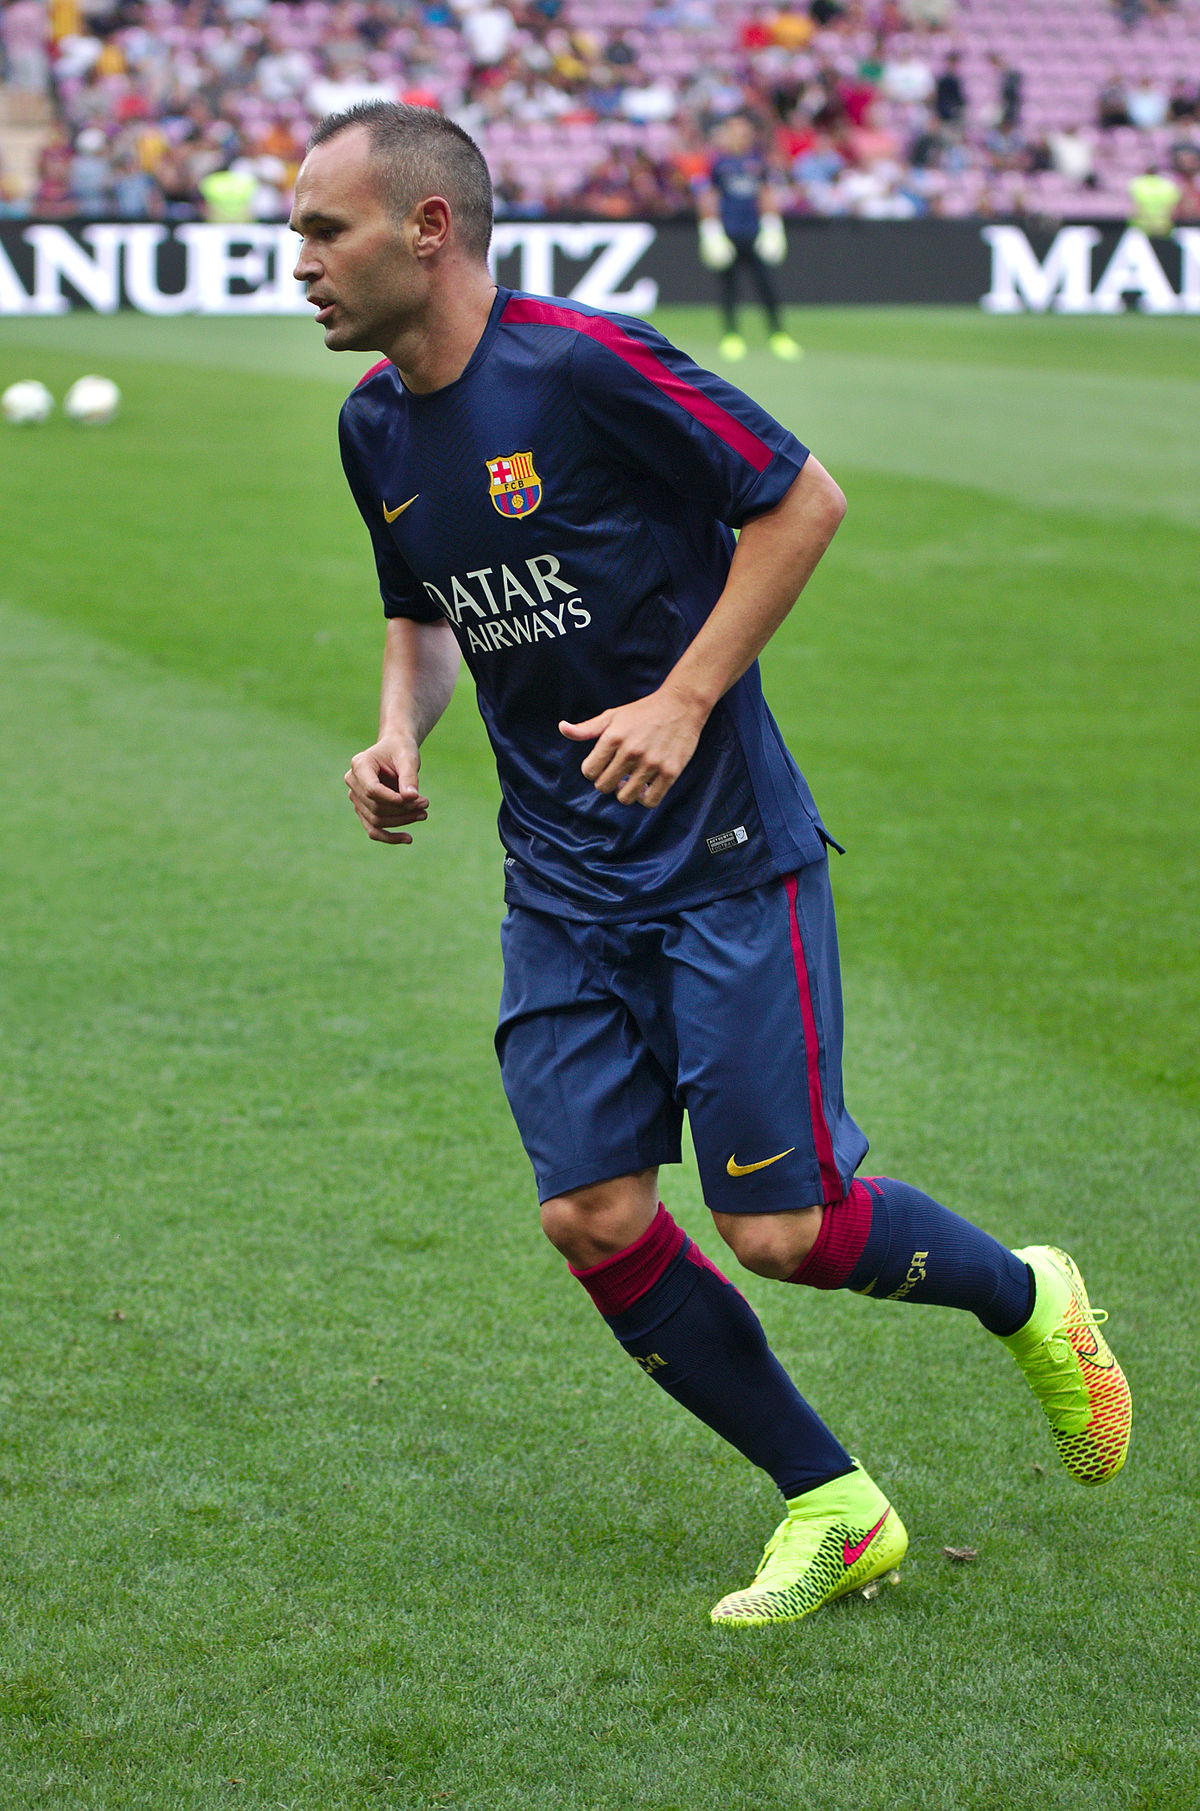 File:Barça - Napoli 20140806 - Andres Iniesta.jpg - Wikimedia Commons